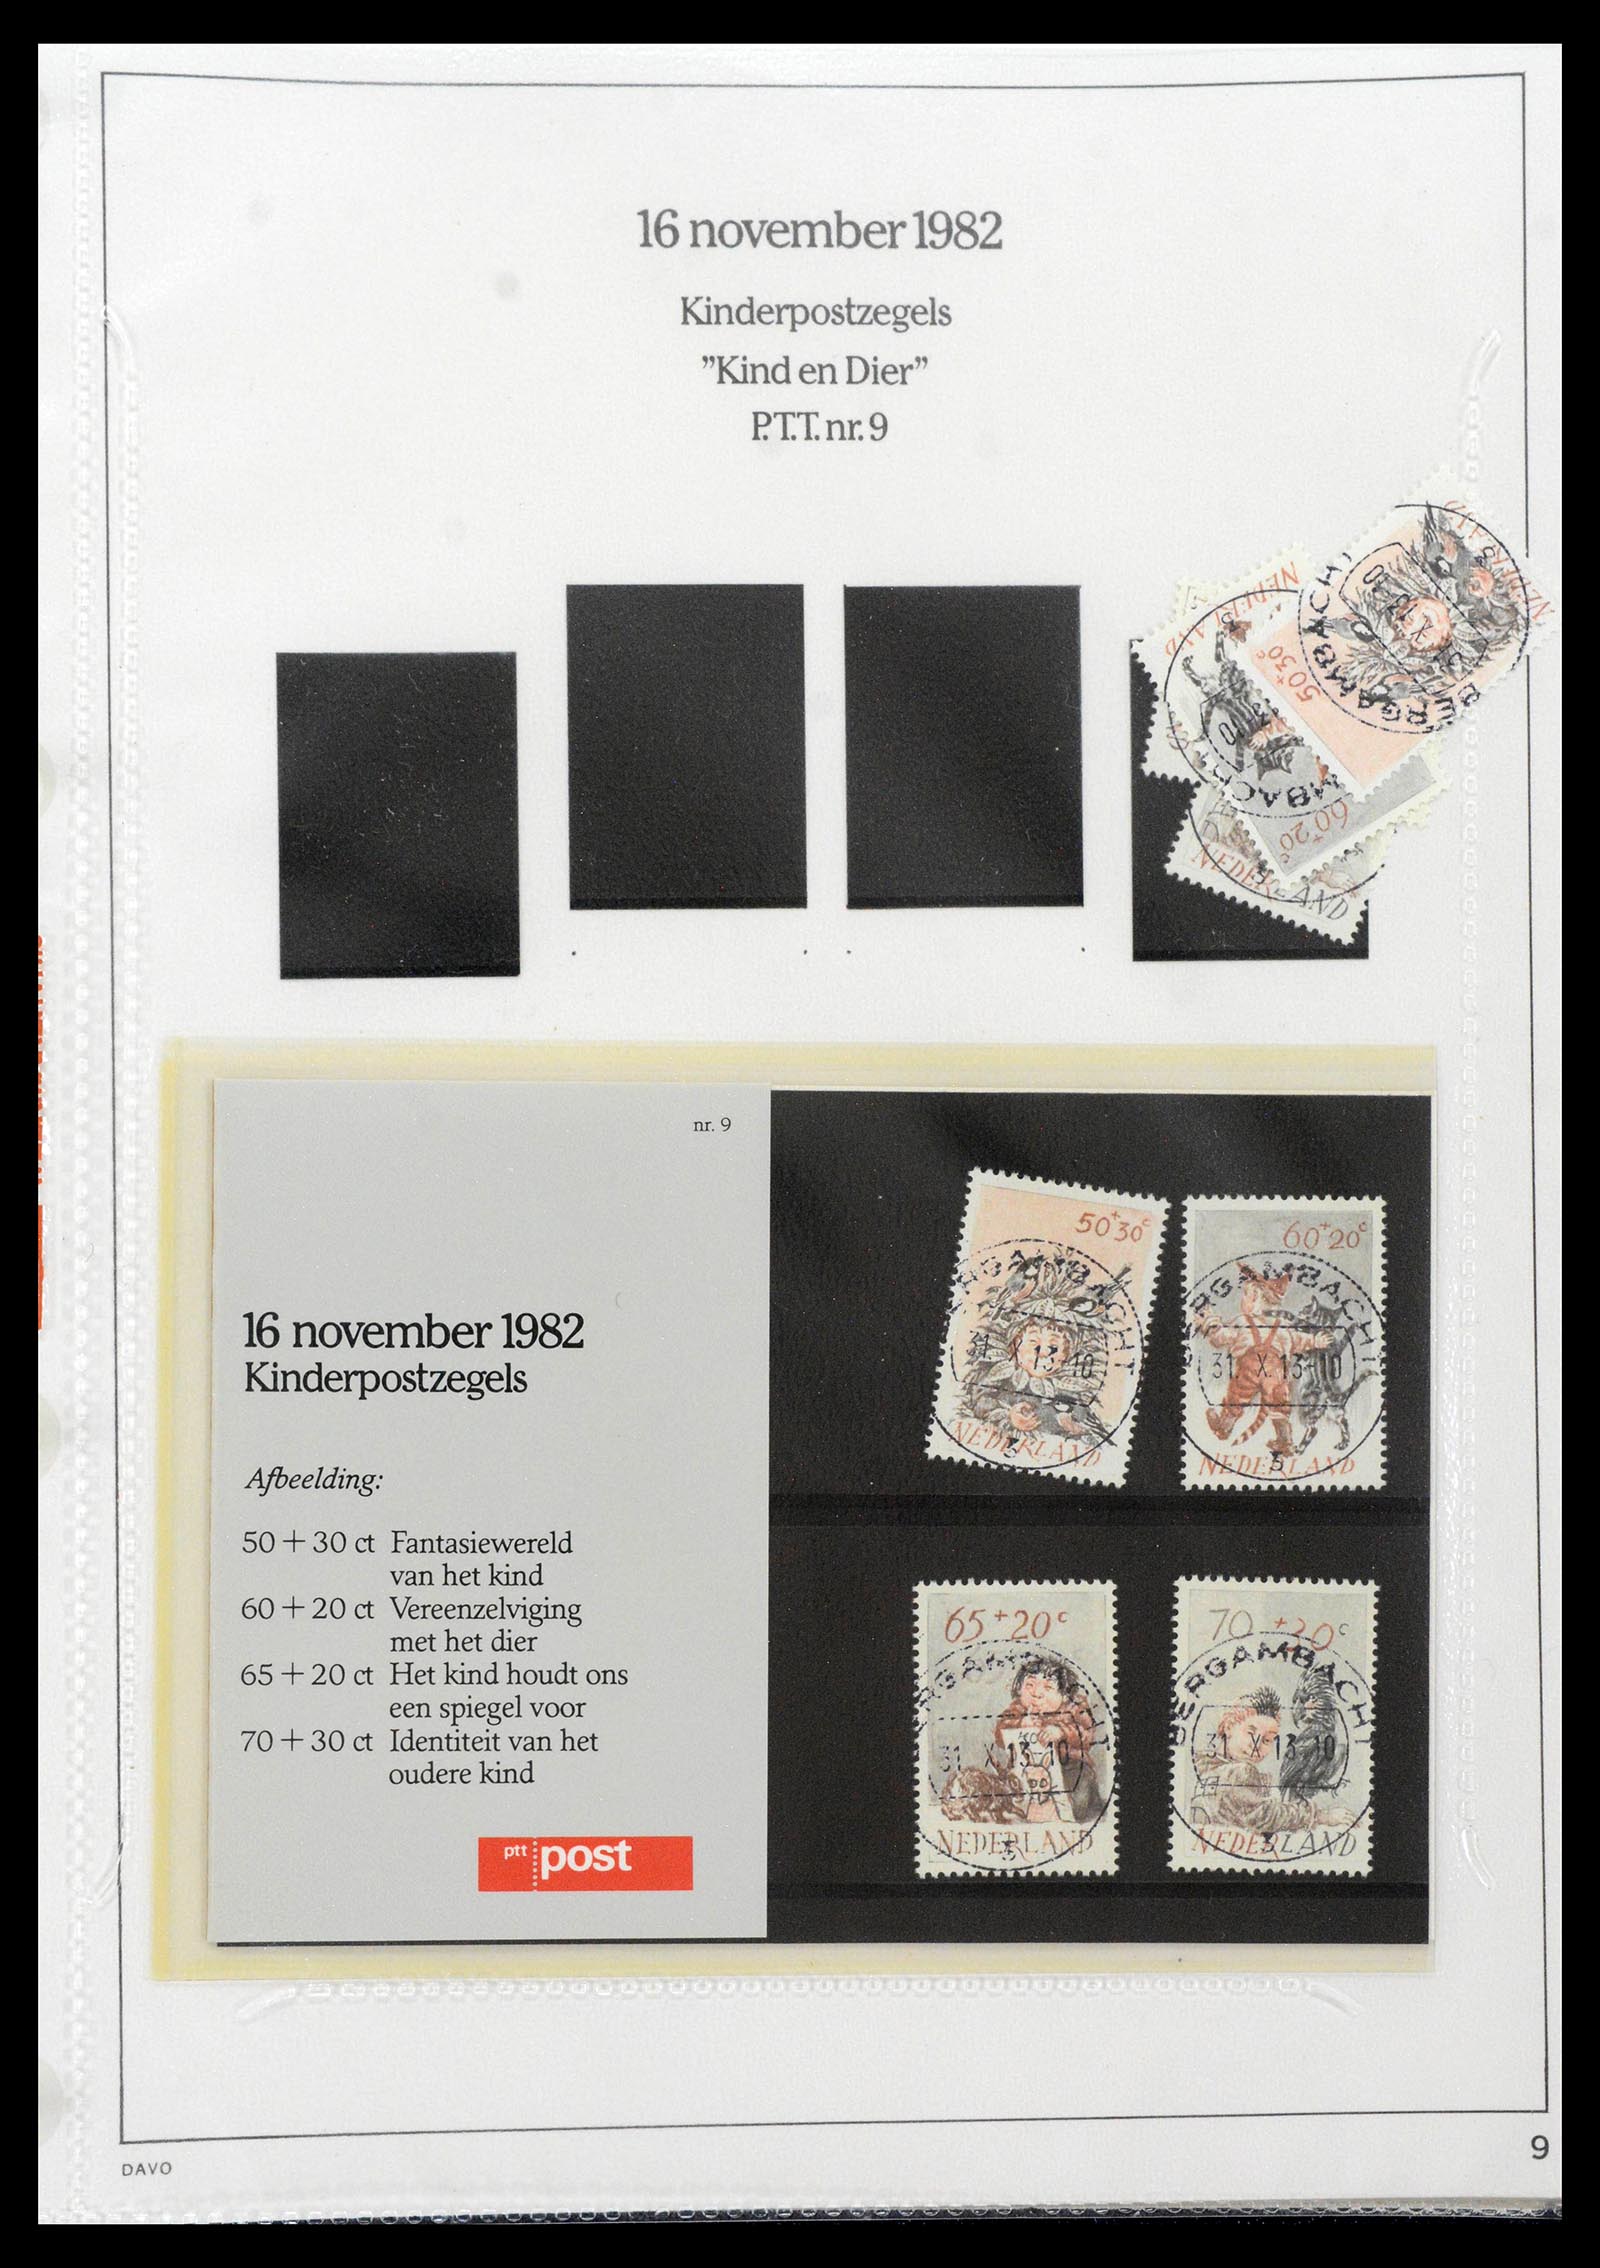 39121 0009 - Stamp collection 39121 Netherlands presentationpacks 1982-2001.